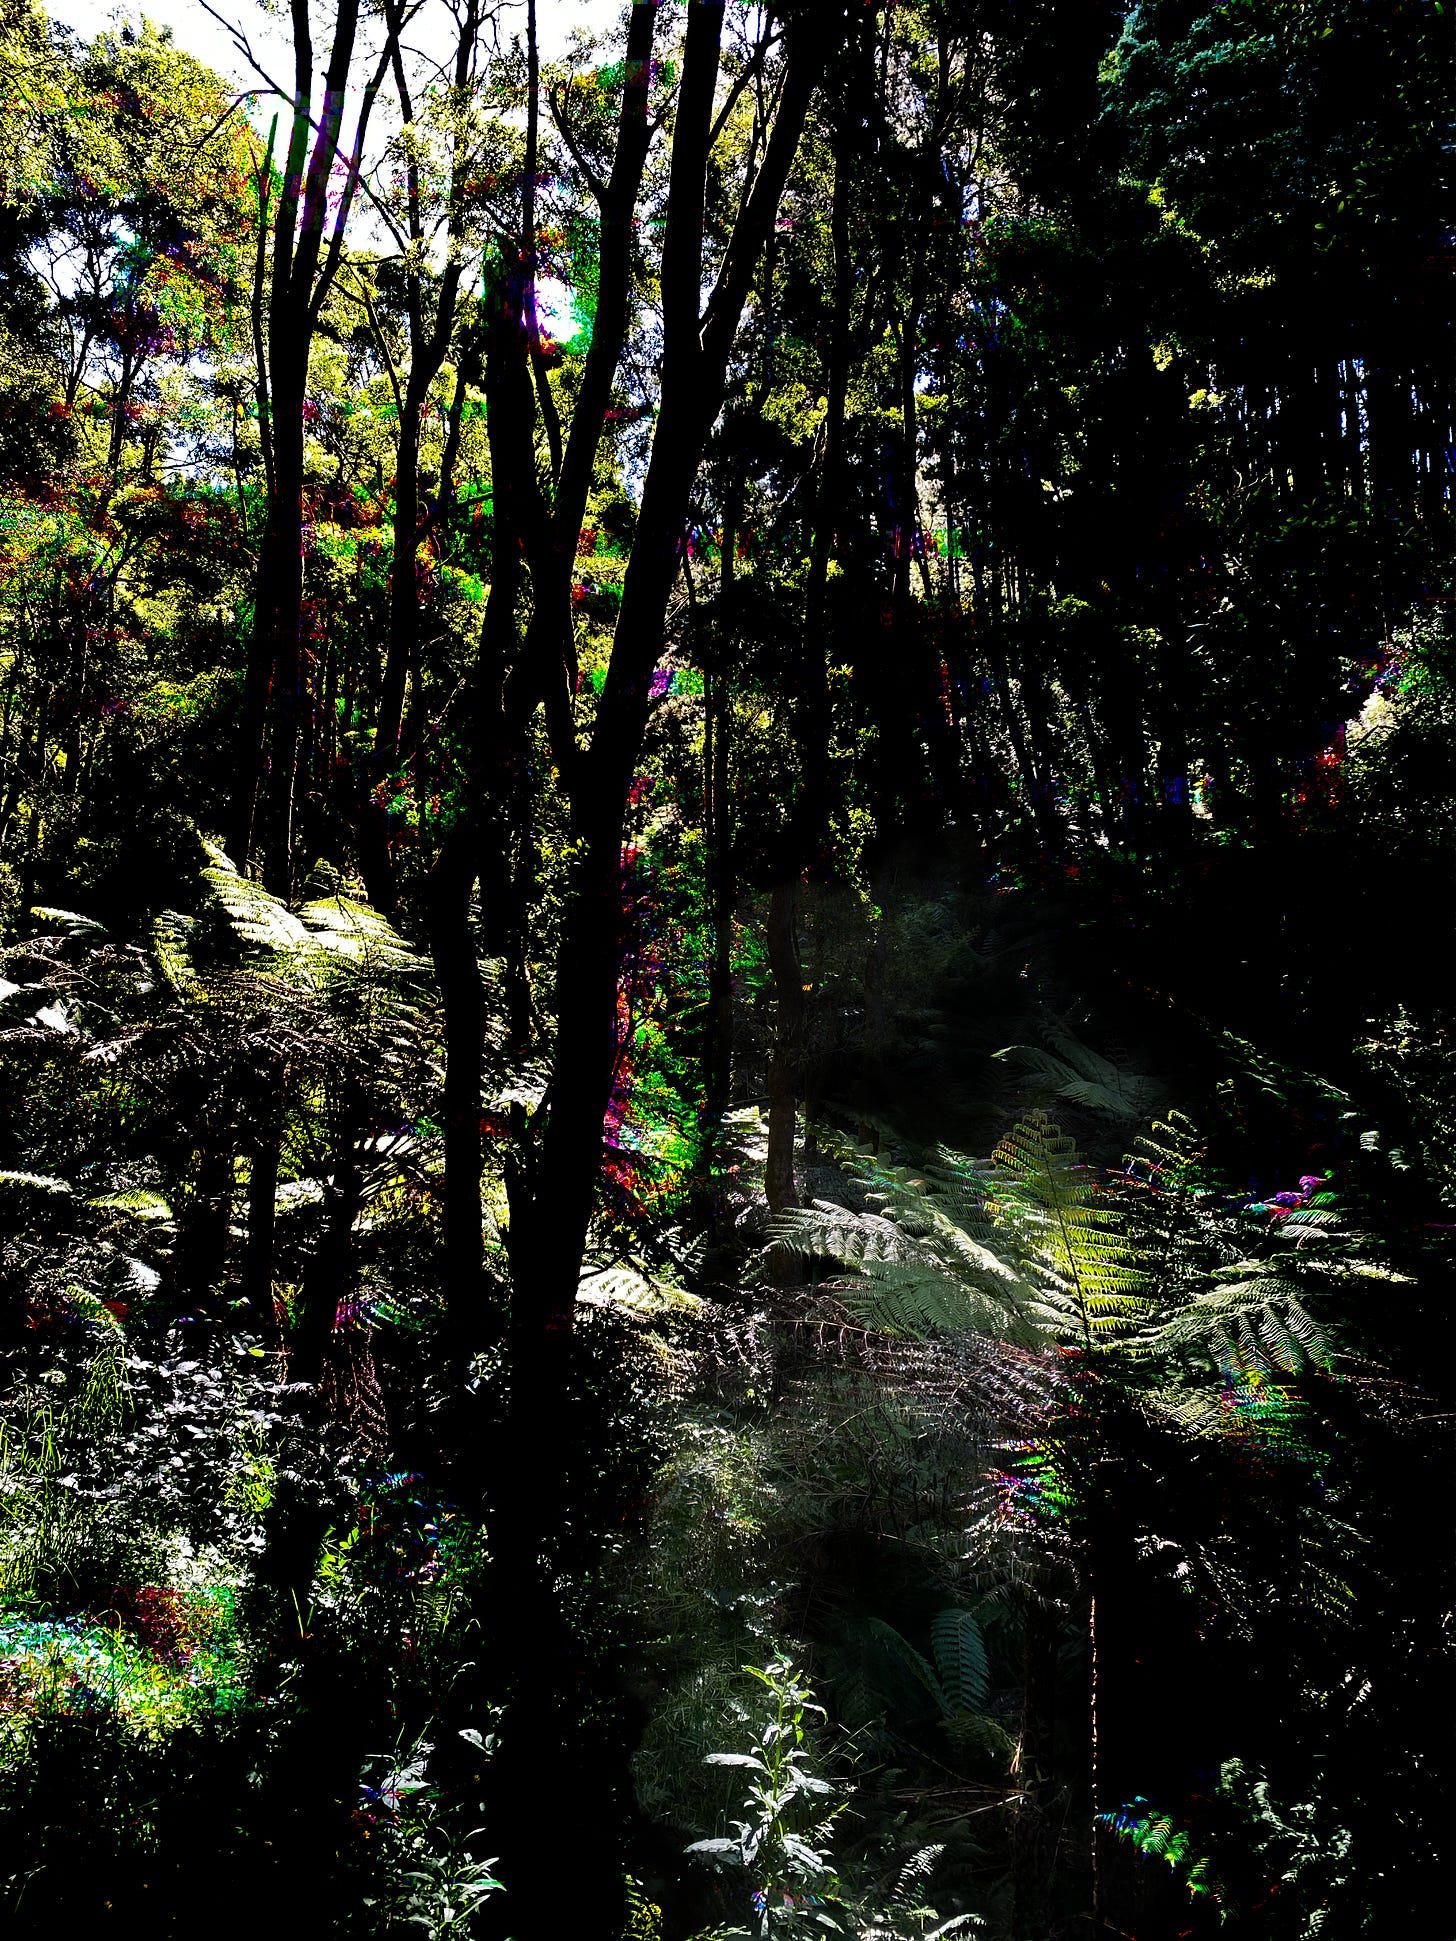 Dark, dense rainforest with disturbing colour glitches